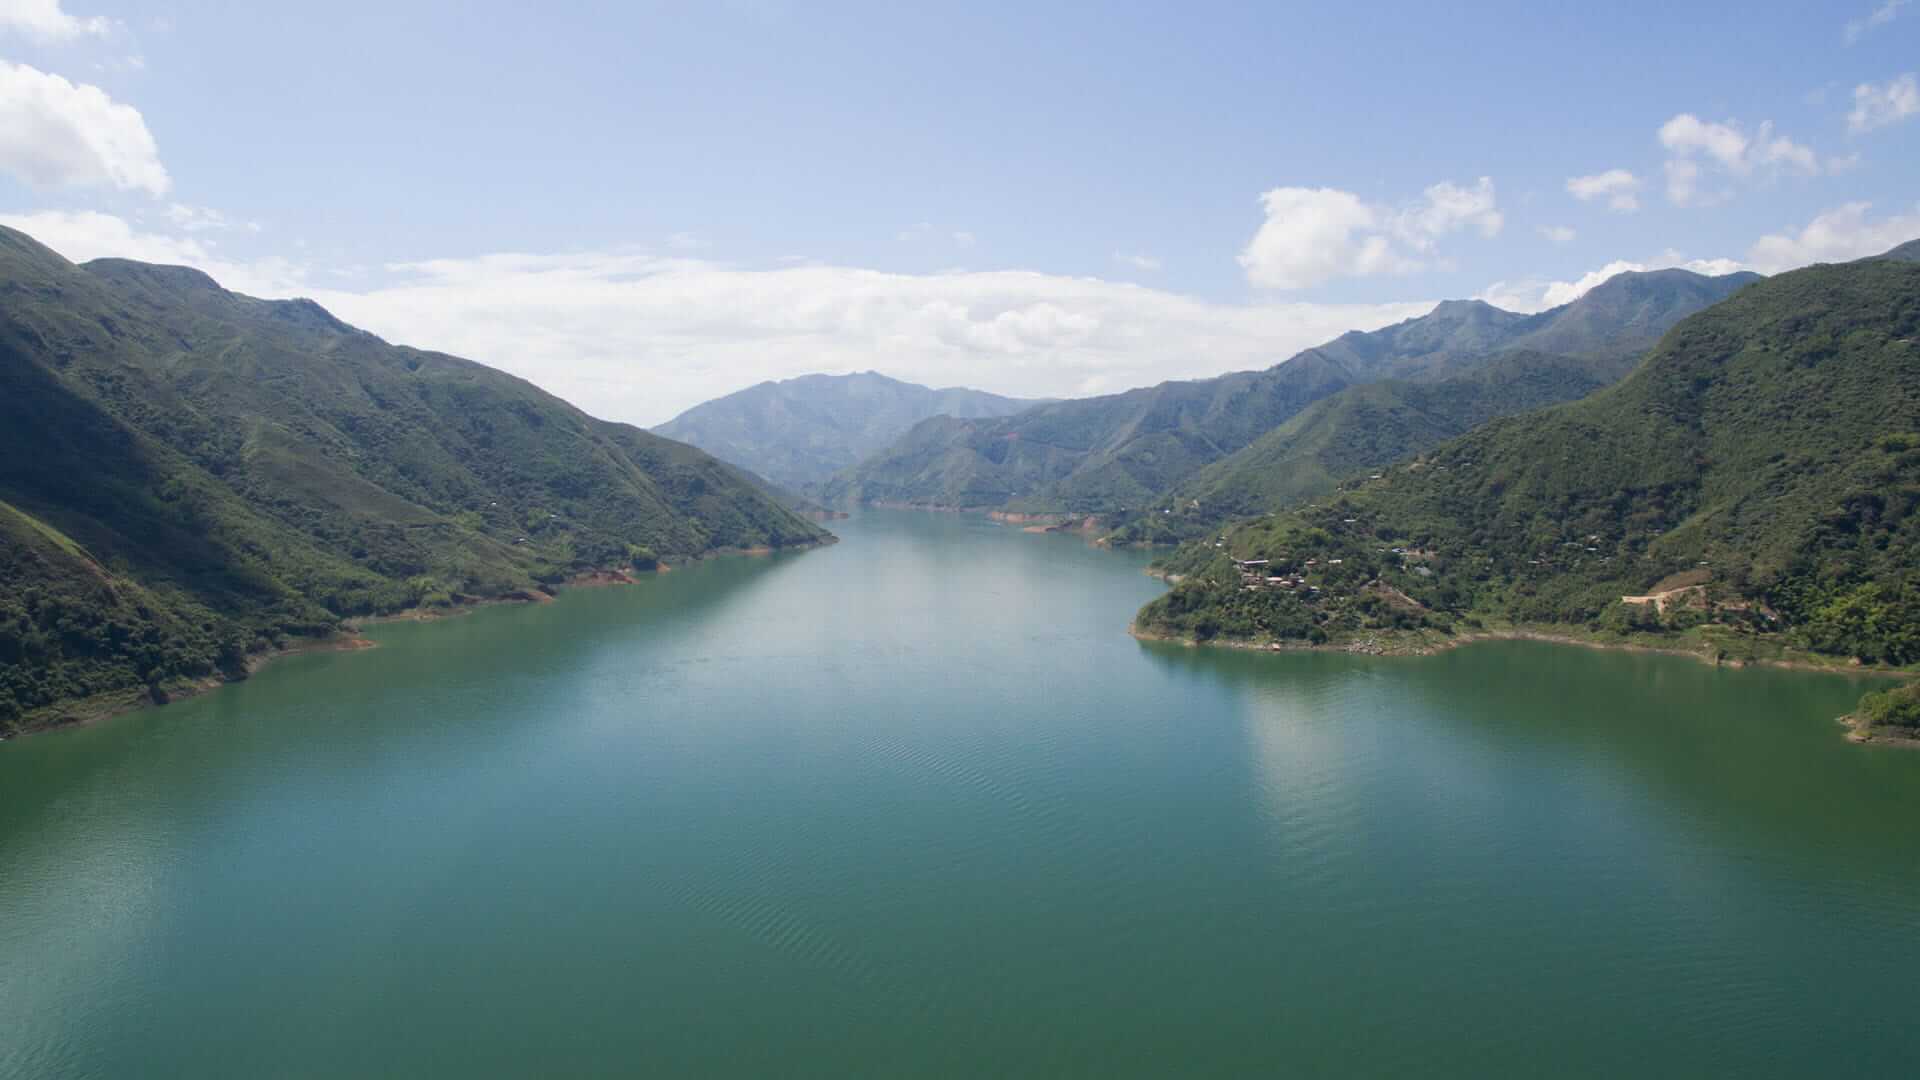 Cañón del río Cauca